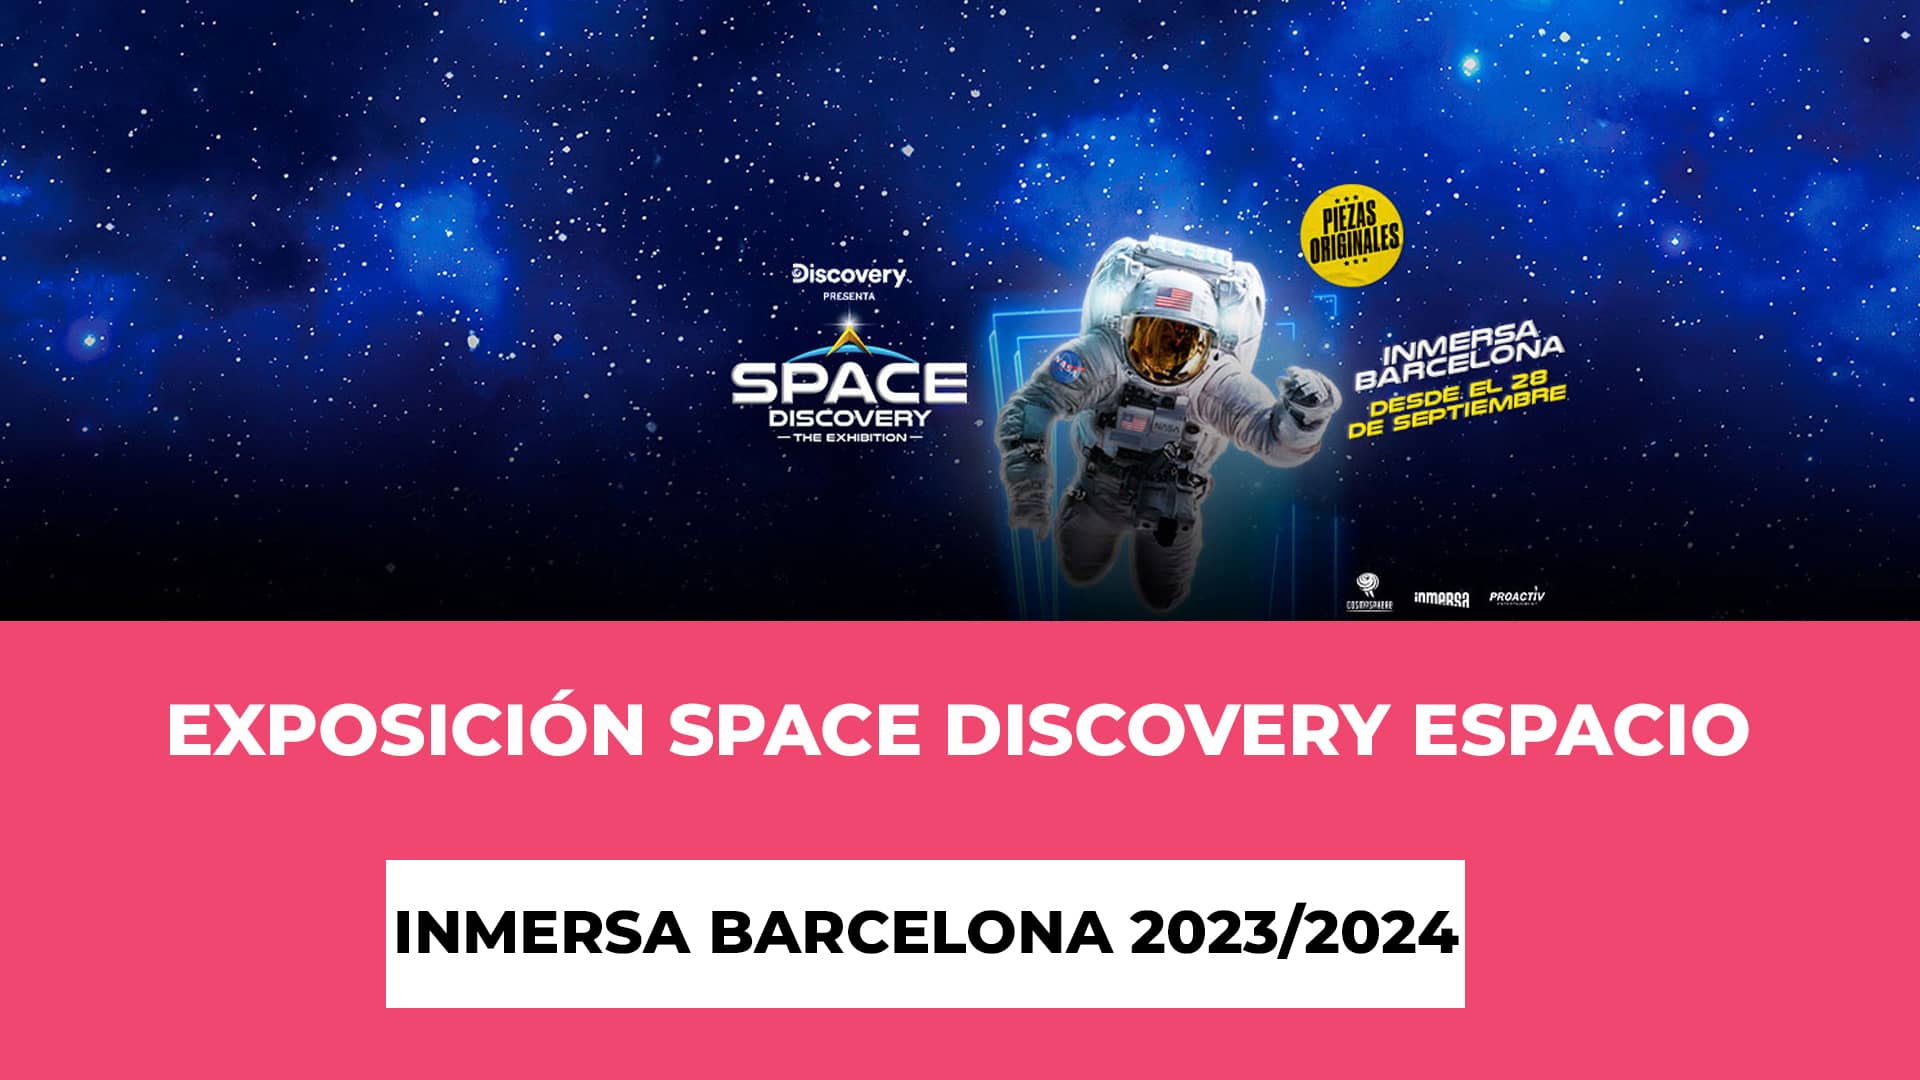 Descubre info sobre la Exposición Space Discovery Espacio Inmersa Barcelona 2023/2024